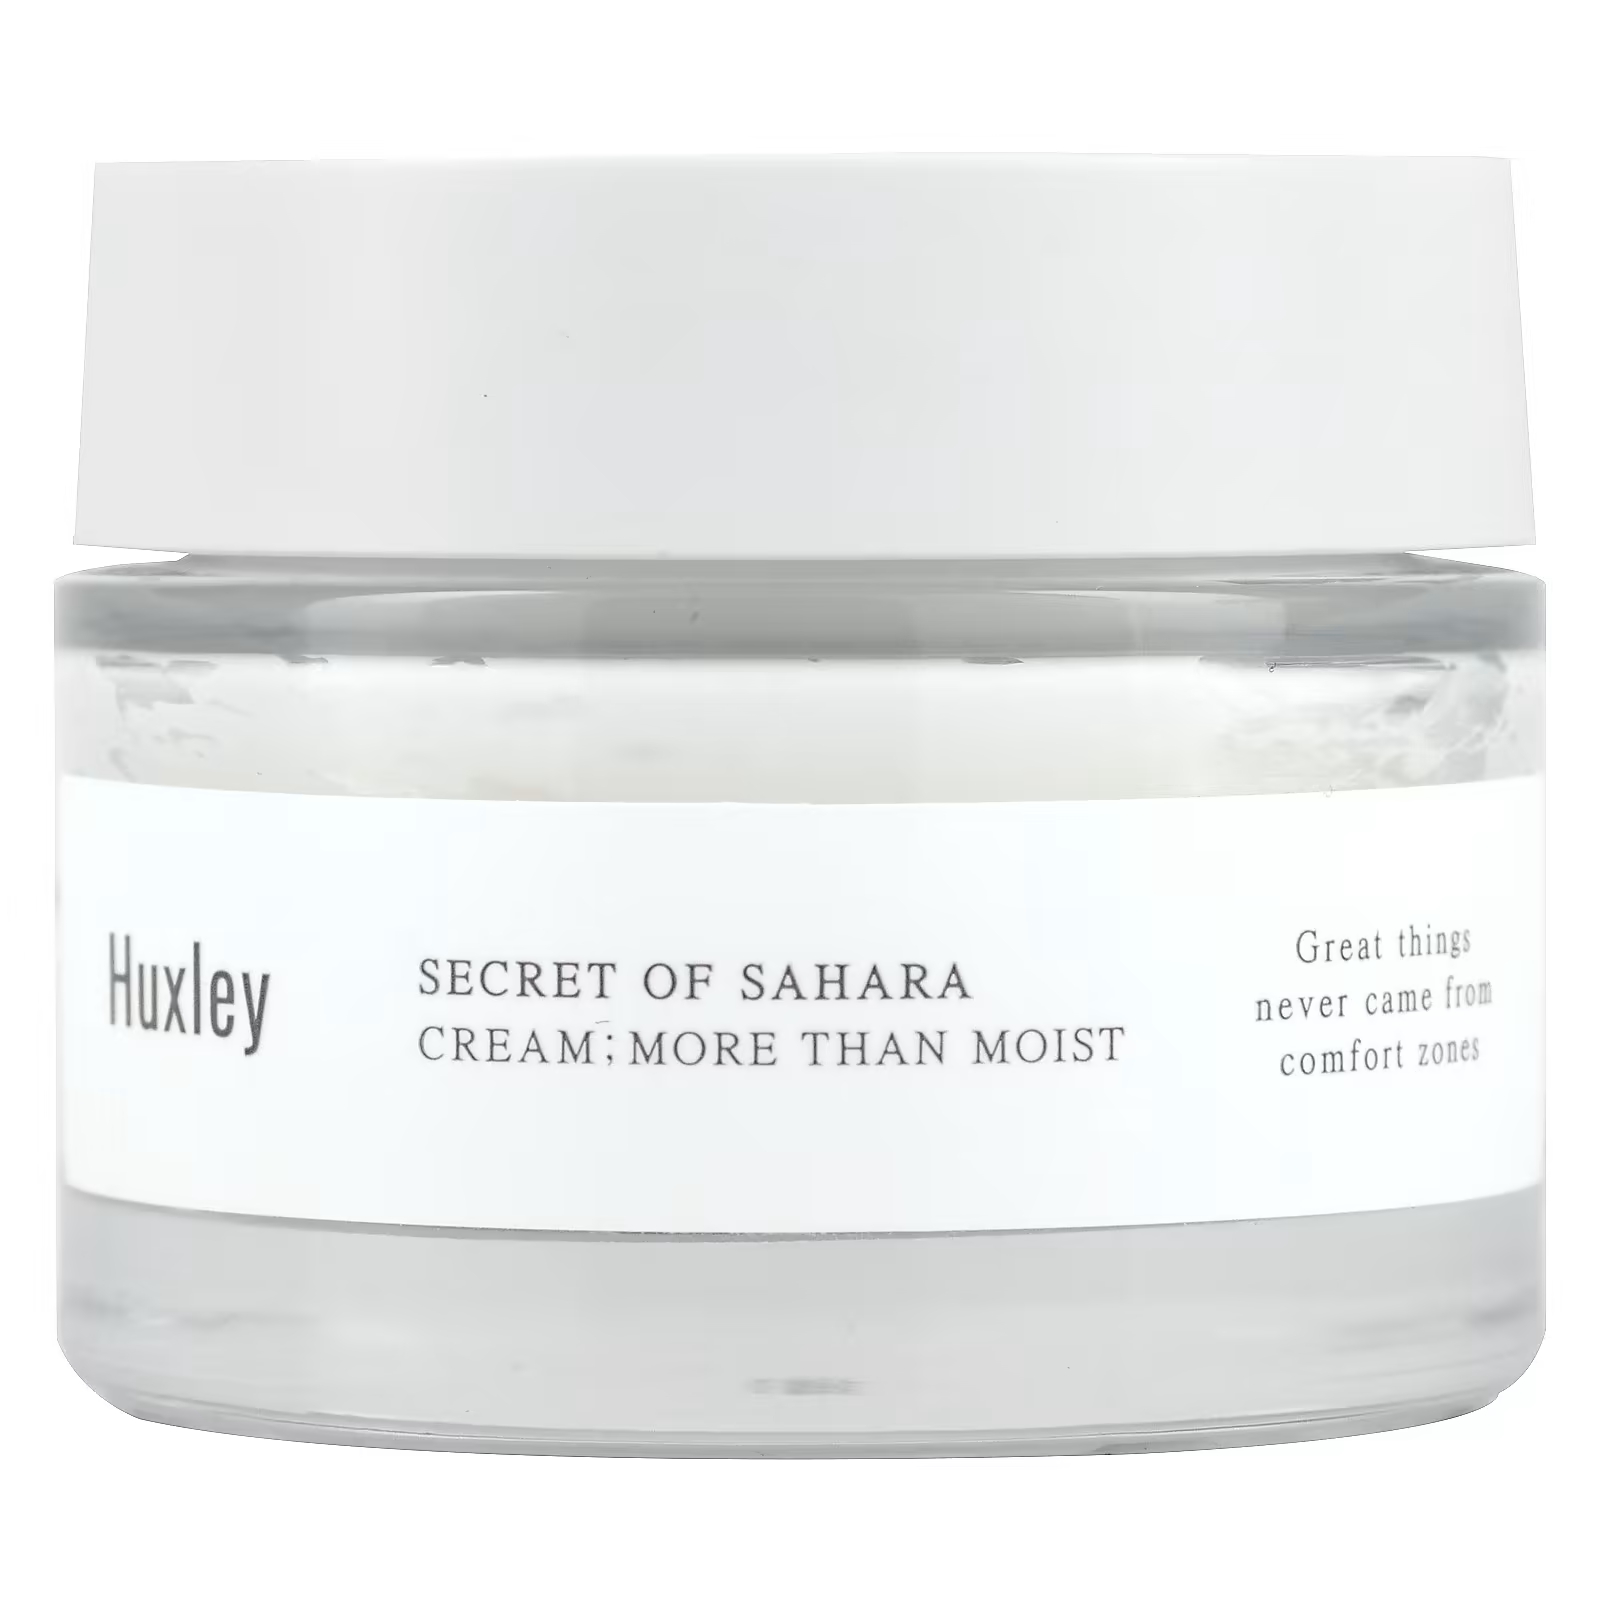 Крем Huxley Secret of Sahara More Than Moist, 50 мл huxley secret of sahara cream fresh and more крем для лица увлажнение и свежесть 50 мл